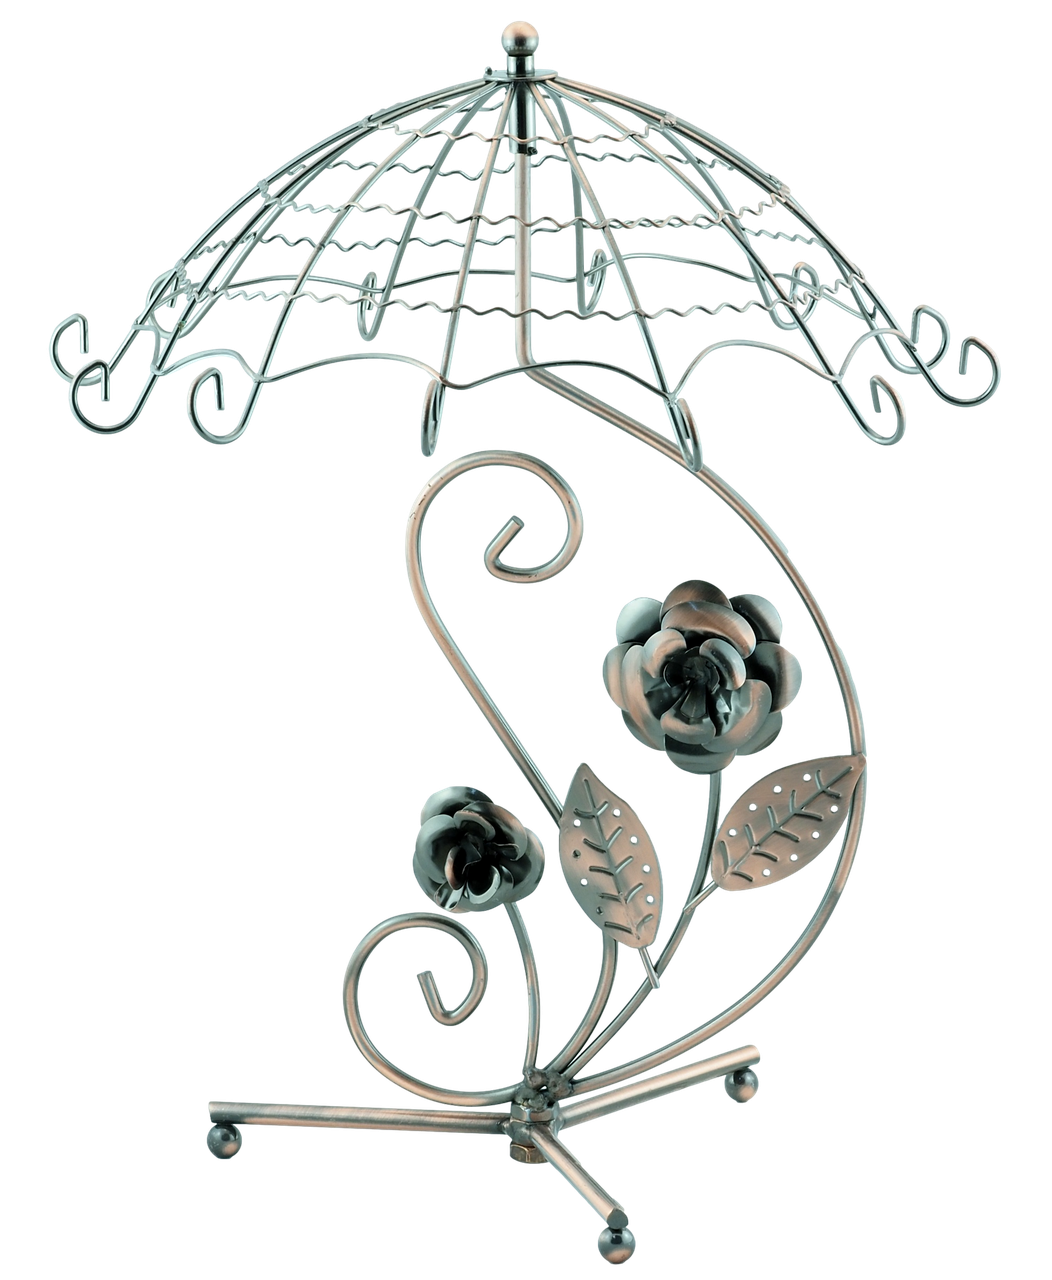 Підставка під усі види прикрас "Металічна бронзова парасолька, що обертається, з квітами" 35х28см дивись опис